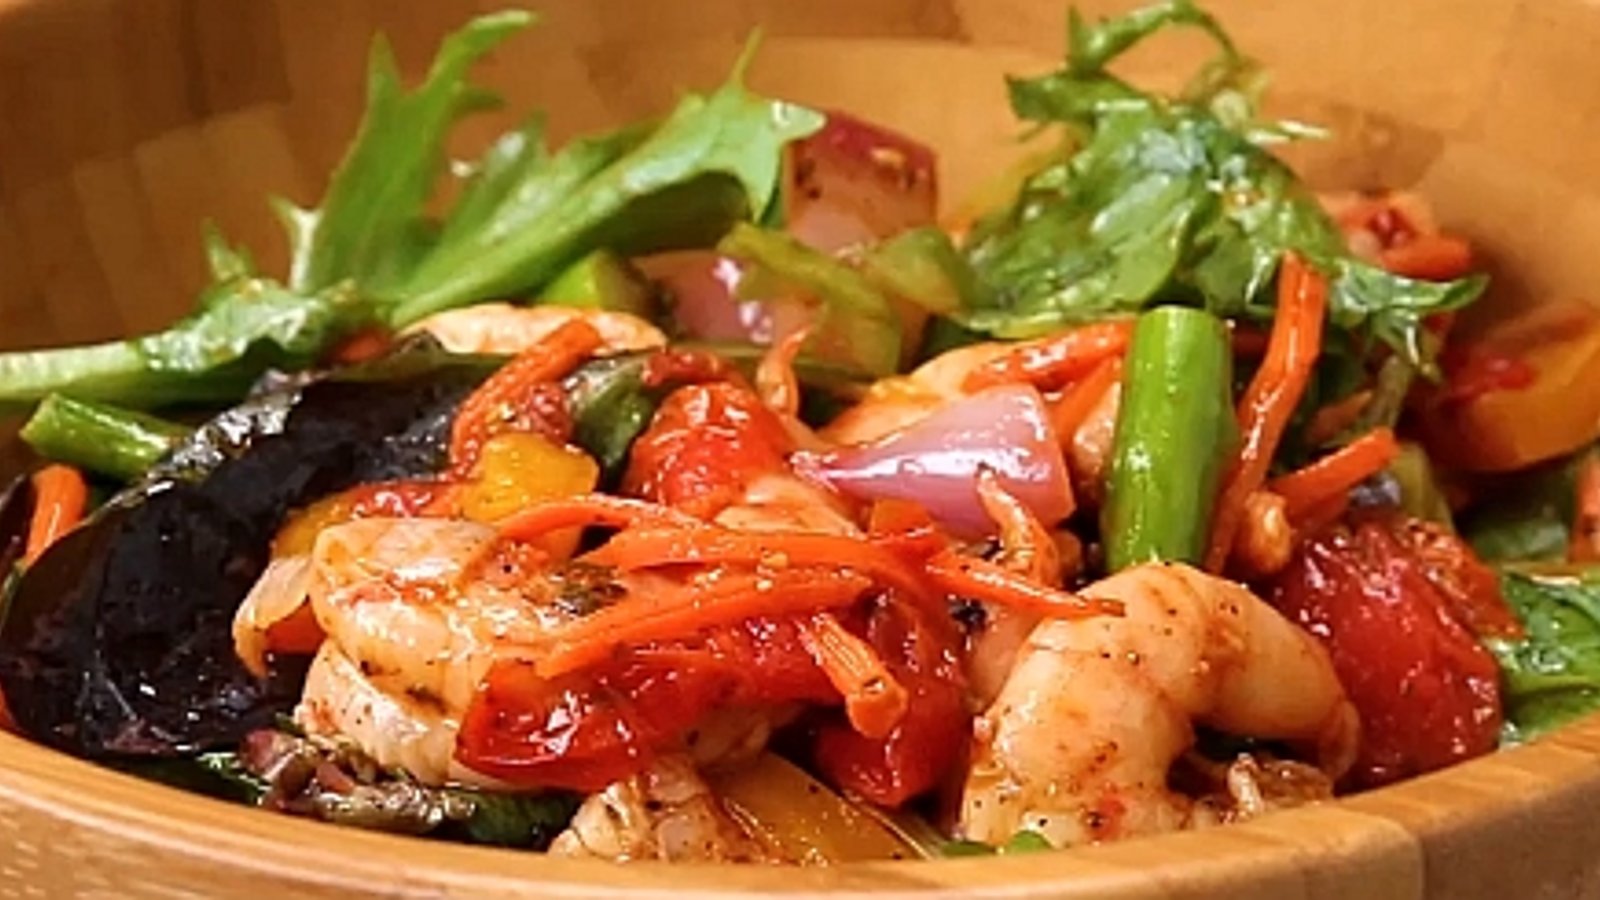 Salade de légumes et crevettes rôtis au four et vinaigrette chili-lime faite maison